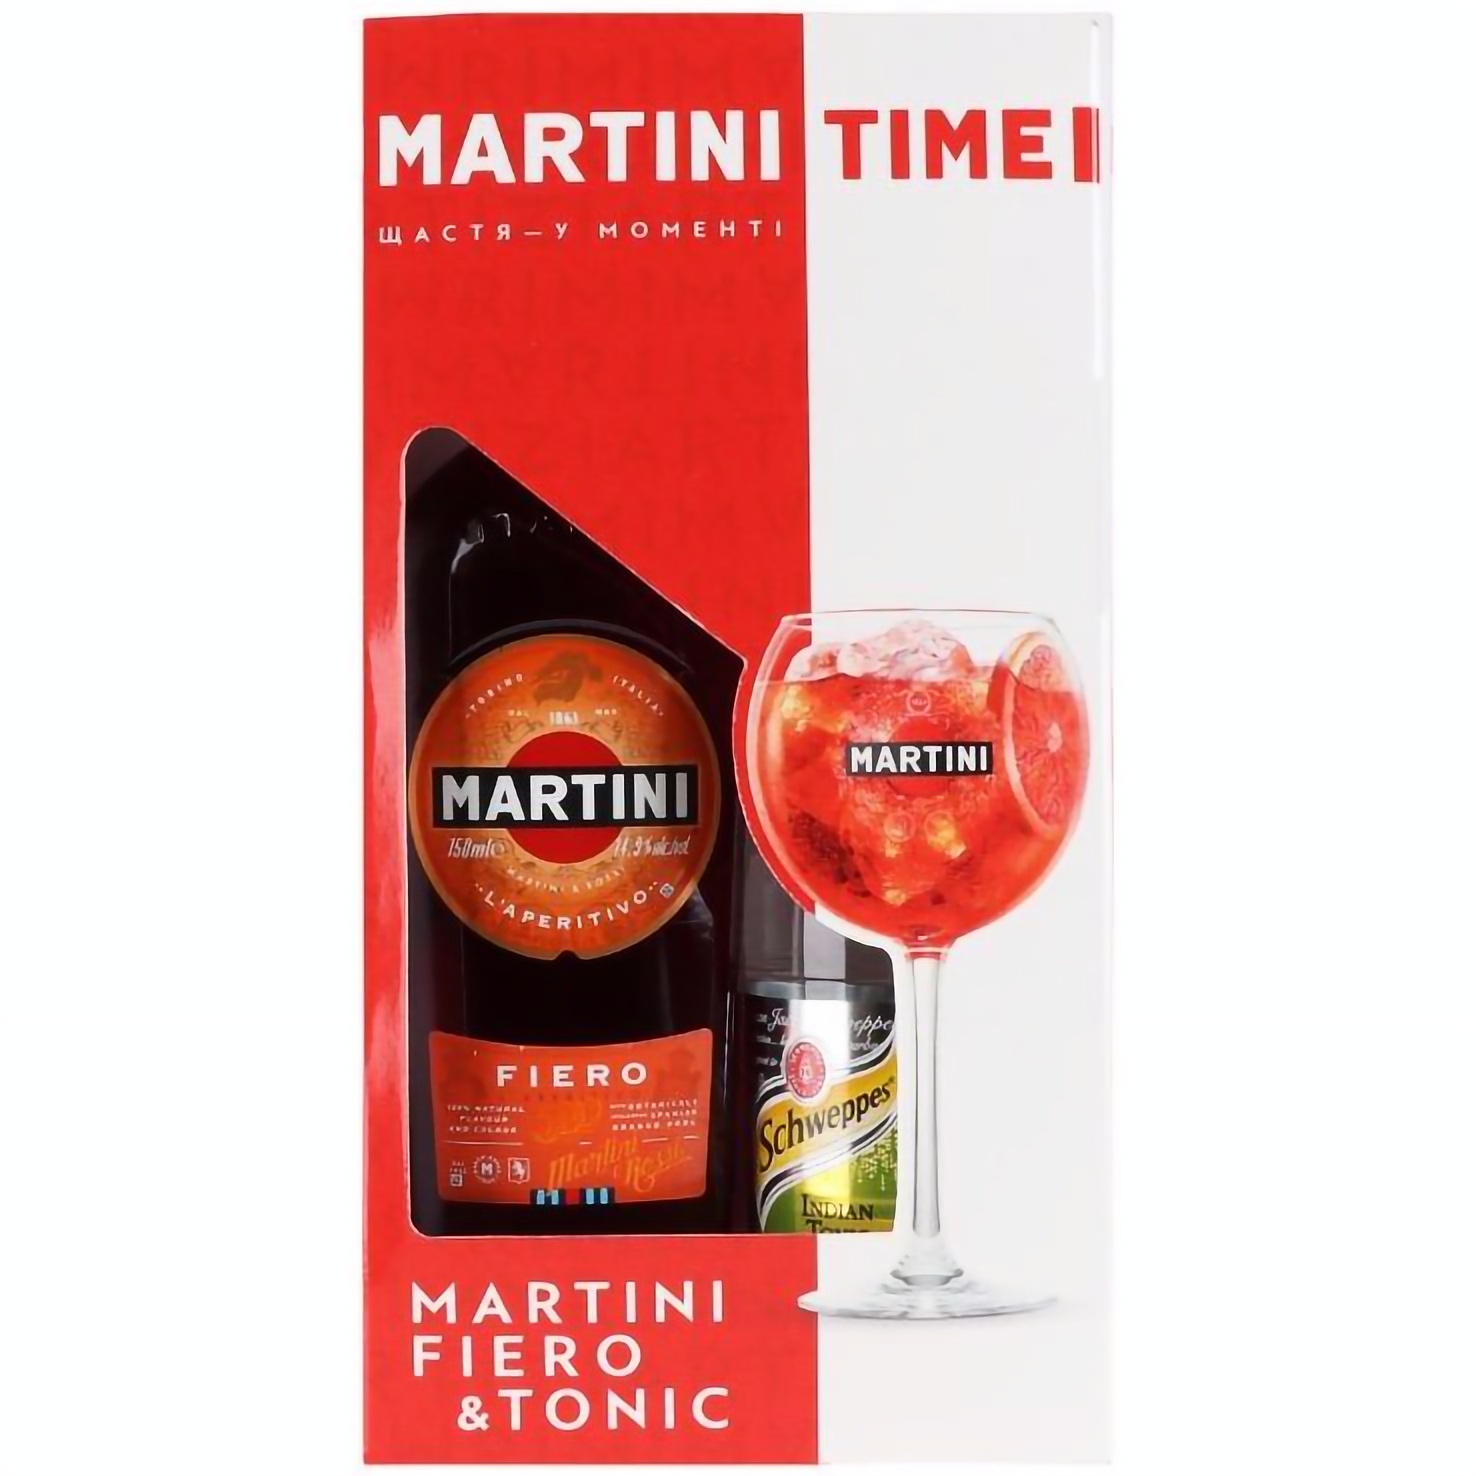 Набор: вермут Martini Fiero 14.9% 0.75 л + тоник Schweppes 0.75 л (785610) - фото 2